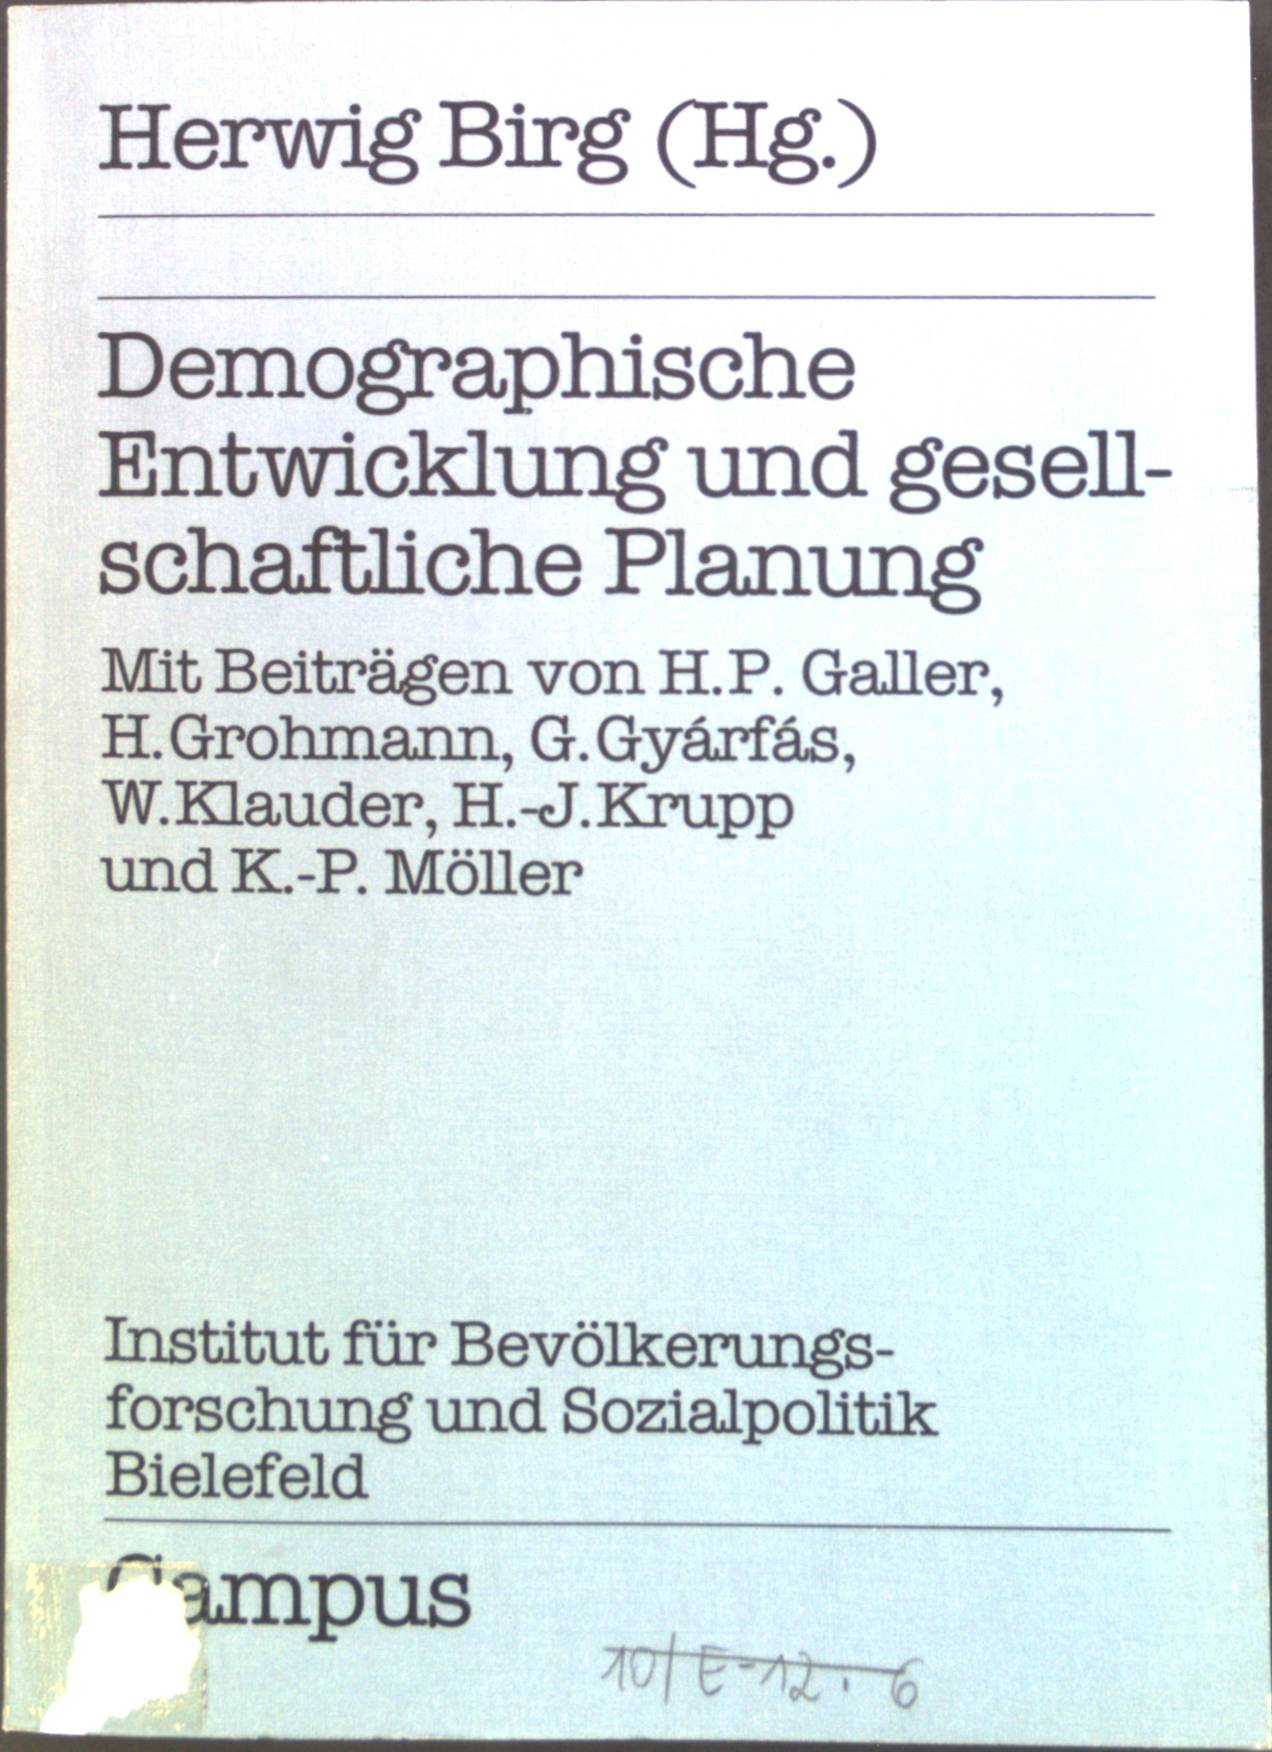 Demographische Entwicklung und gesellschaftliche Planung. Bd. 6 - Birg, Herwig, Heinz P. Galler H. Grohmann u. a.